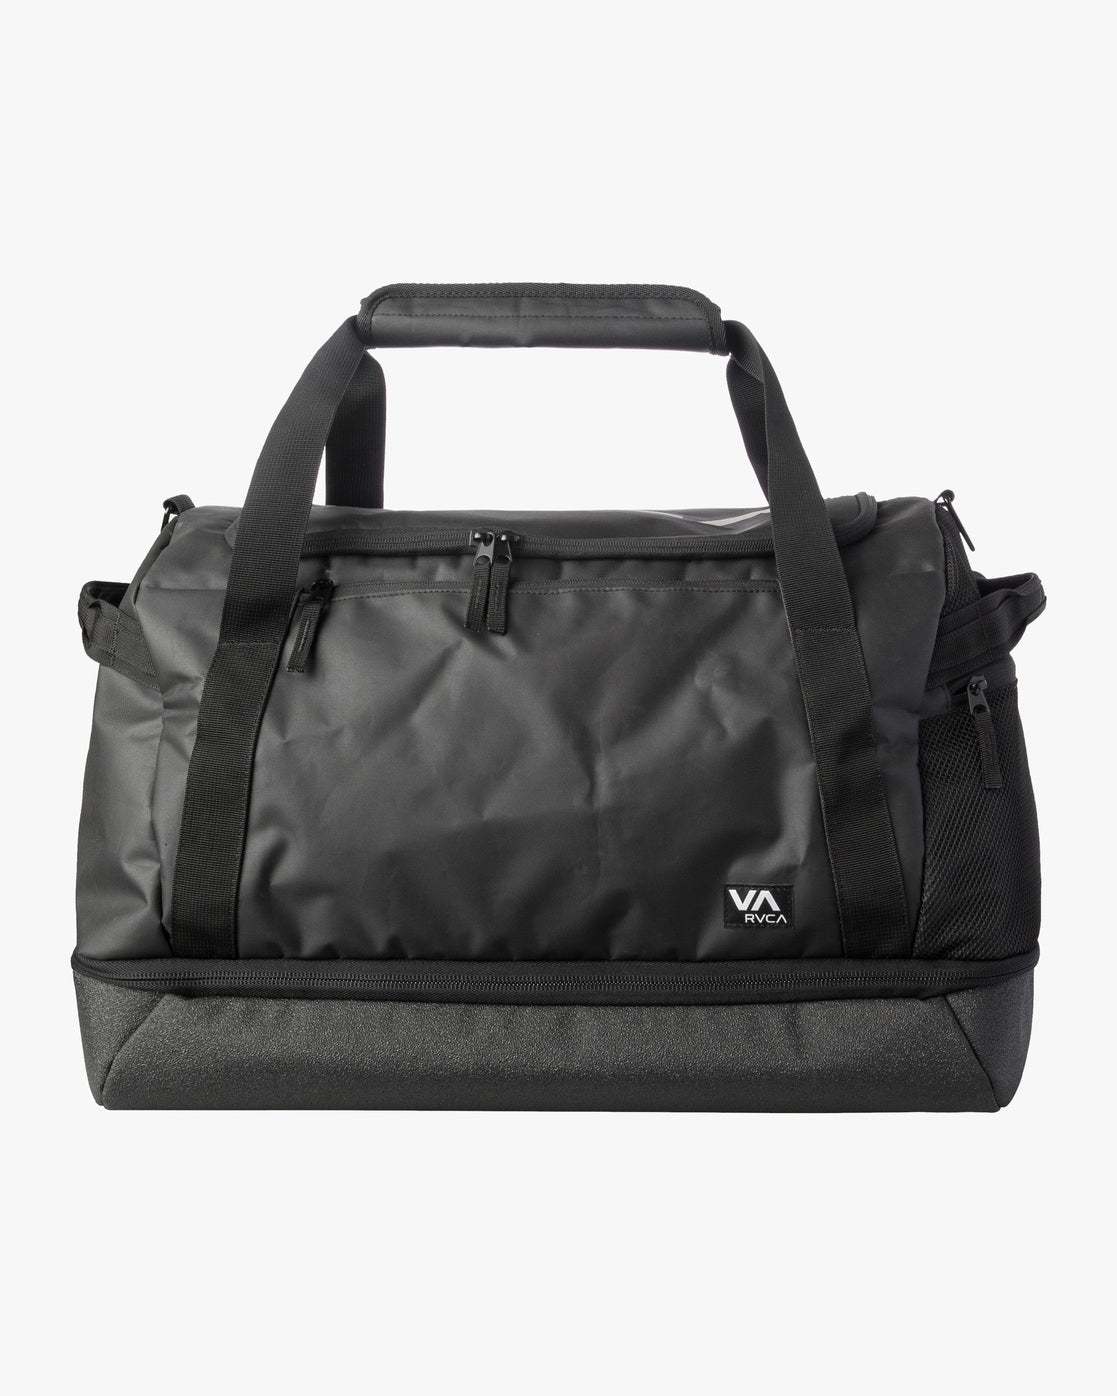 RVCA VA Sport Duffle Bag